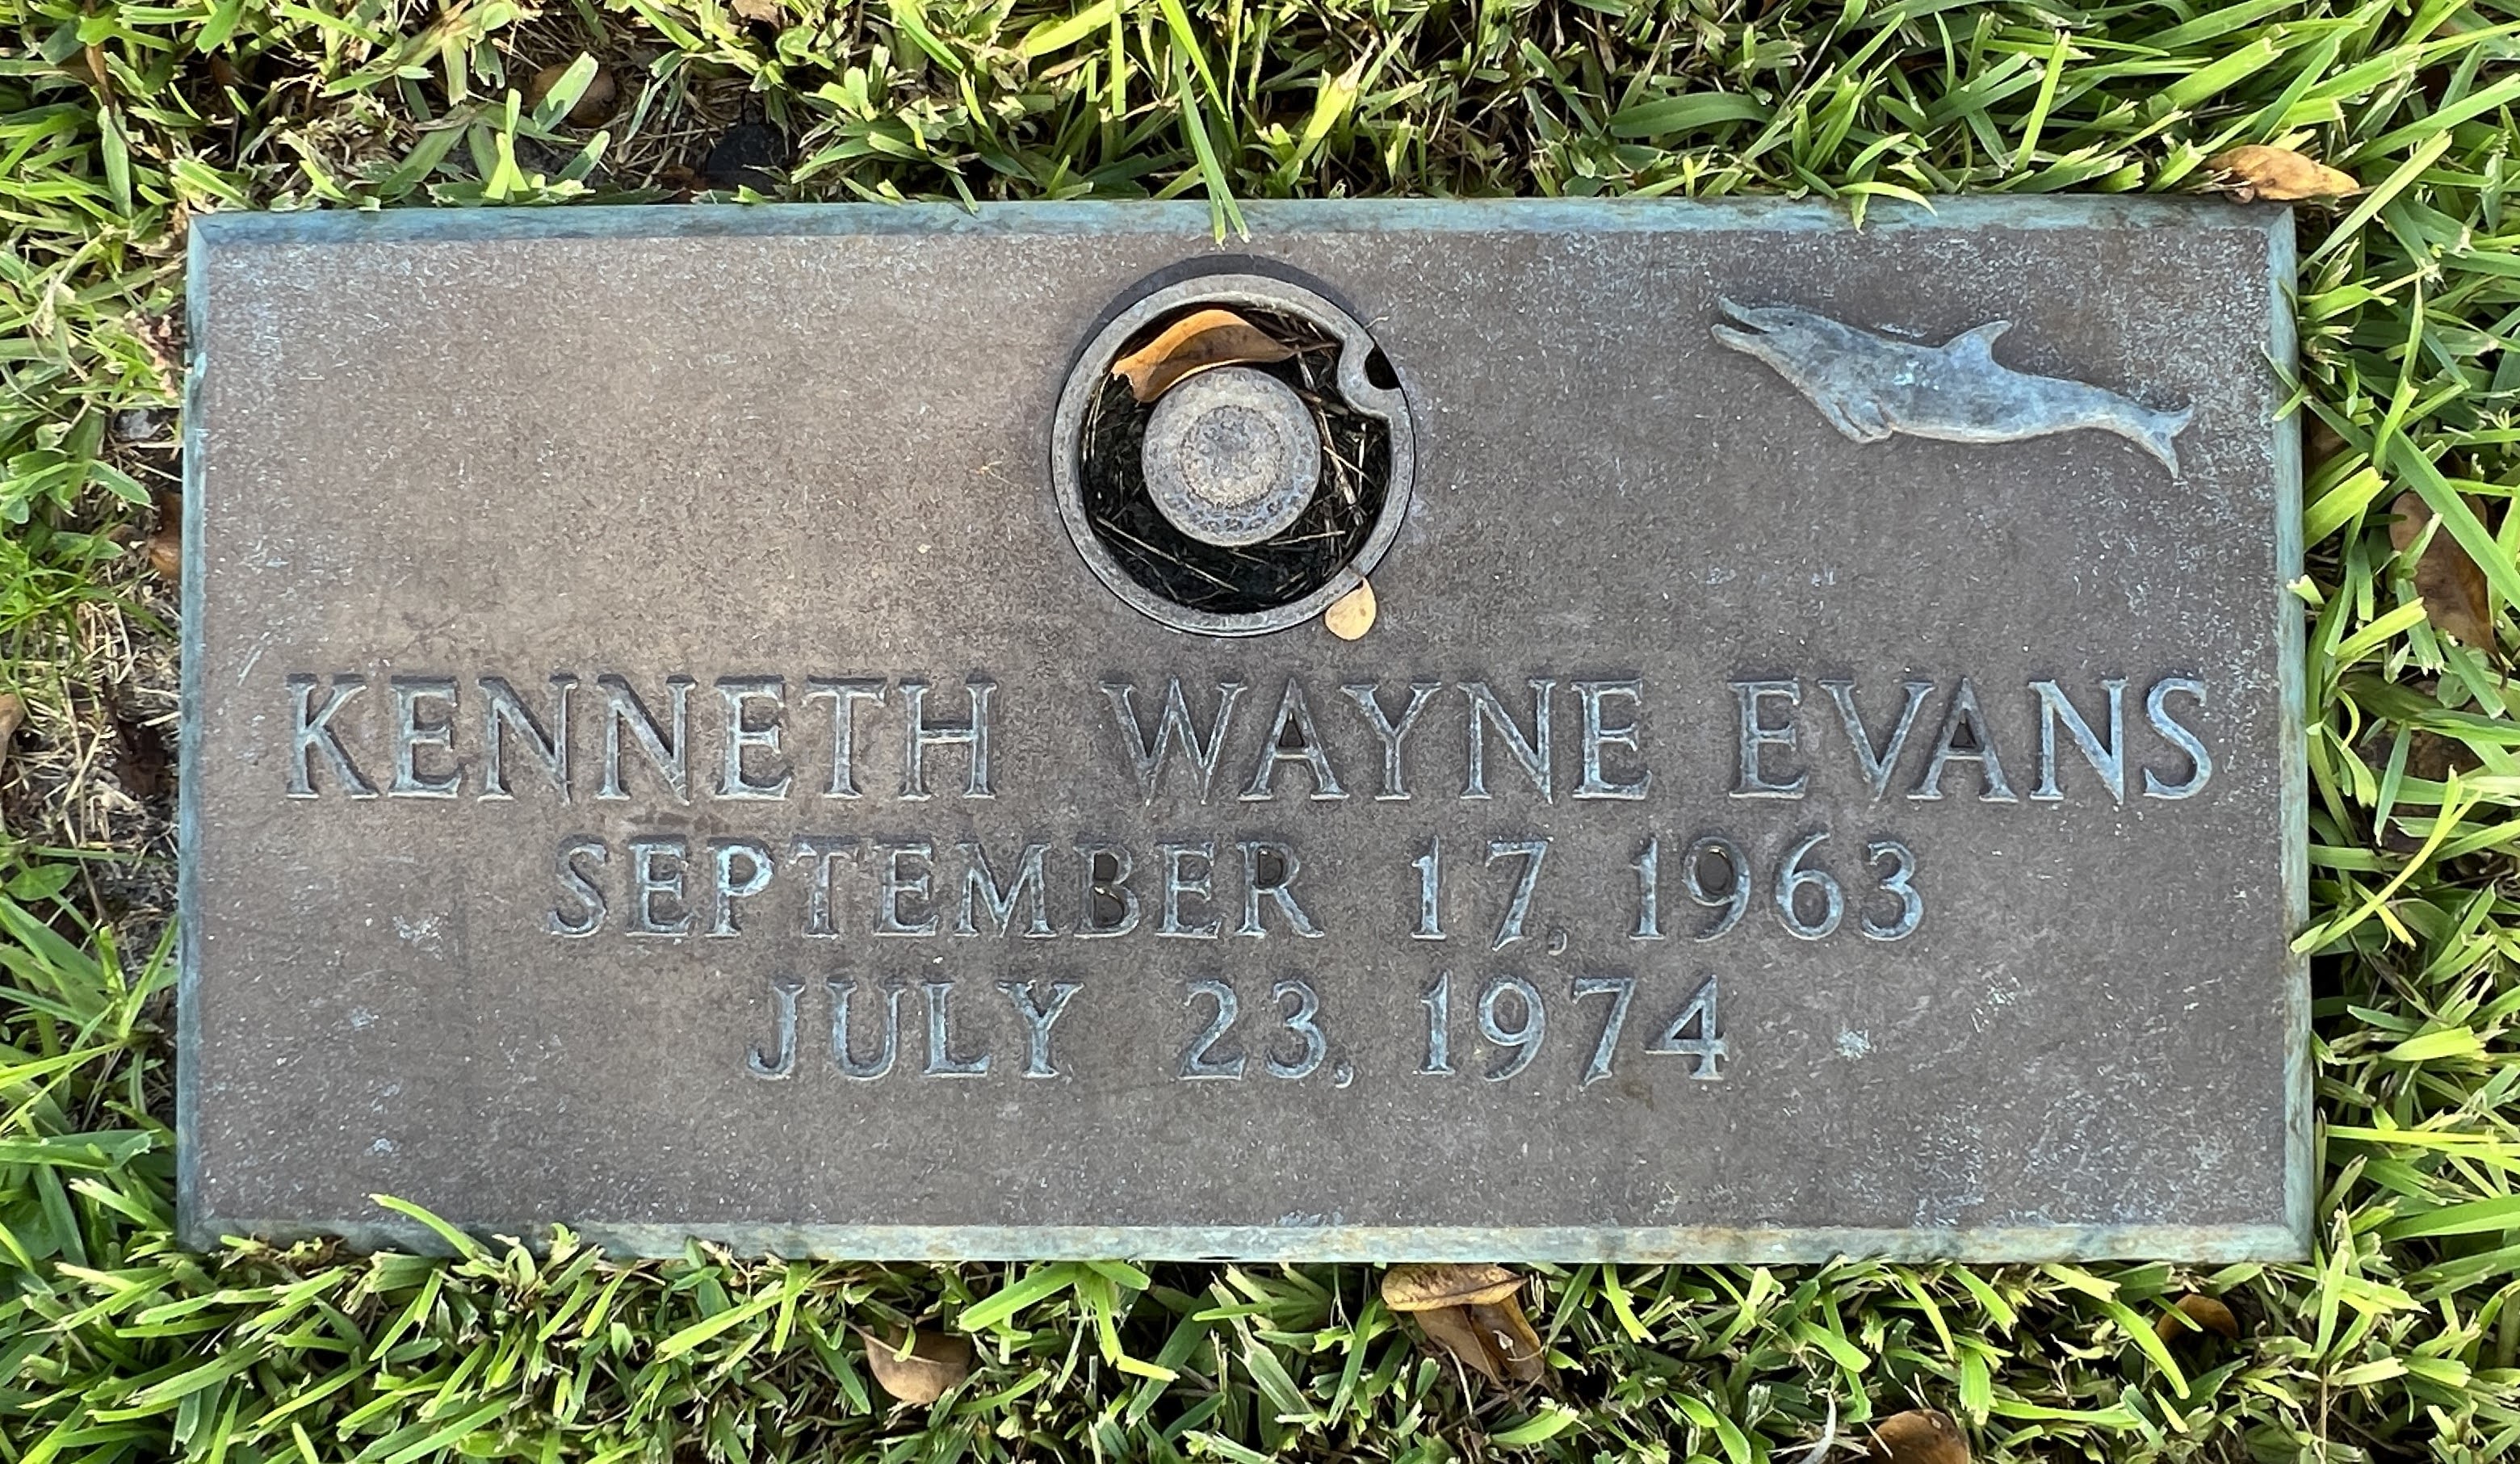 Kenneth Wayne Evans